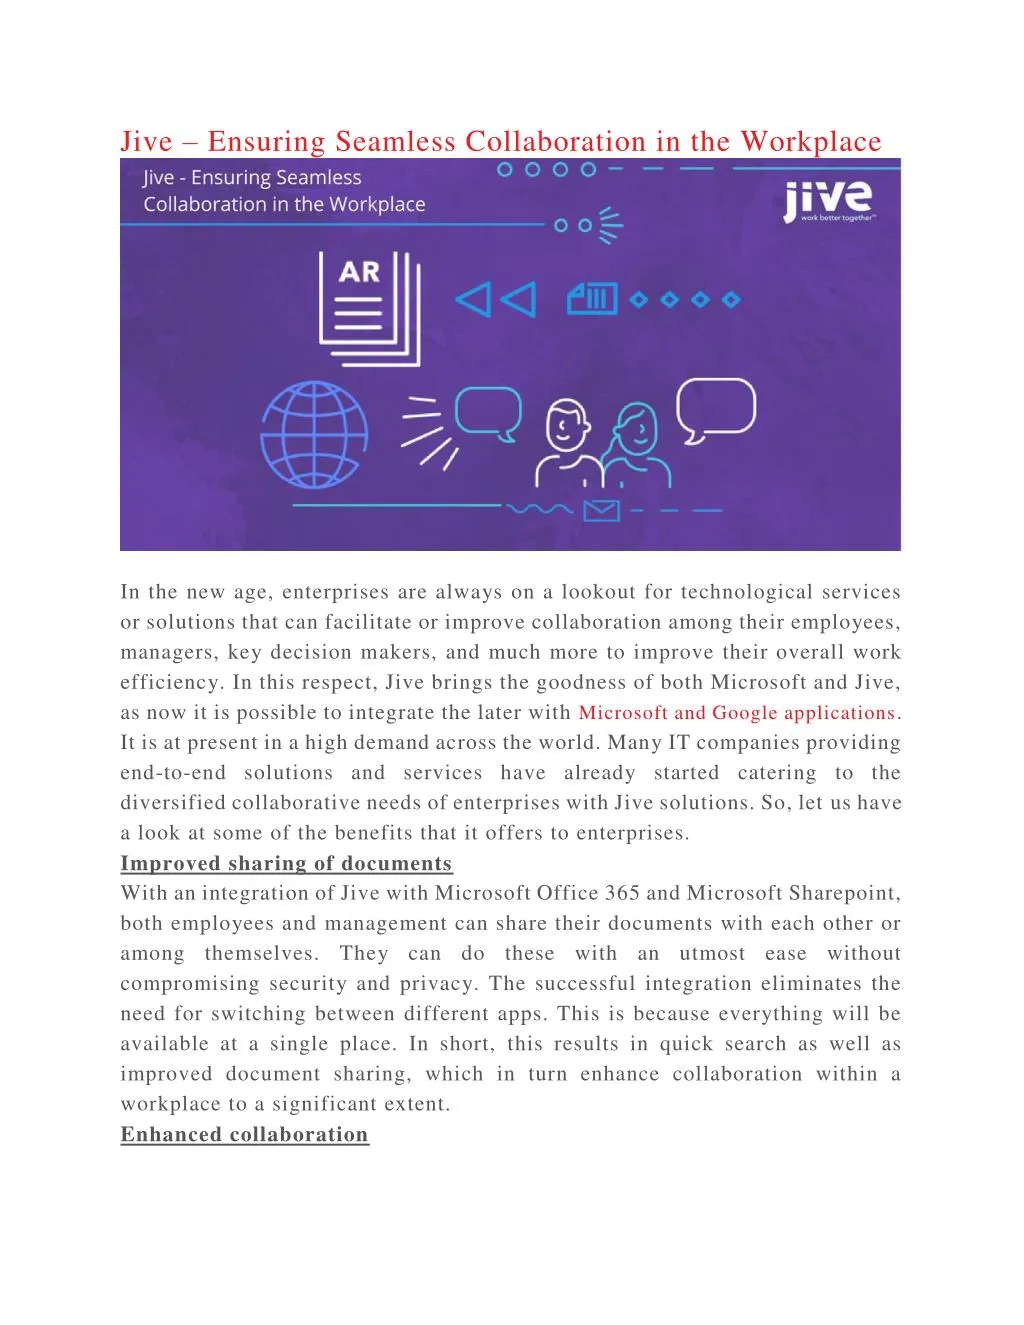 jive ensuring seamless collaboration